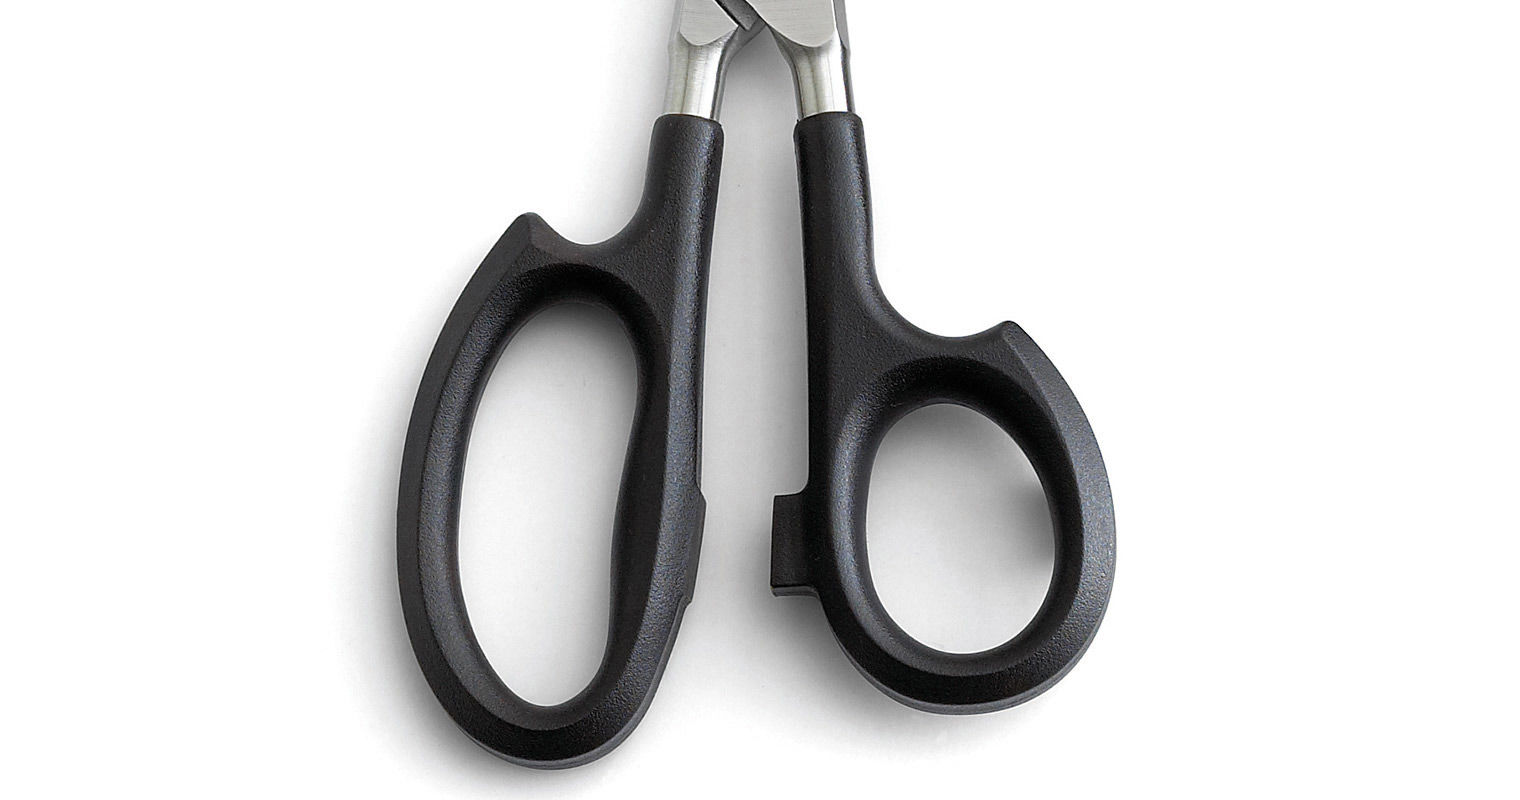 Leather Scissors – QiK Sports